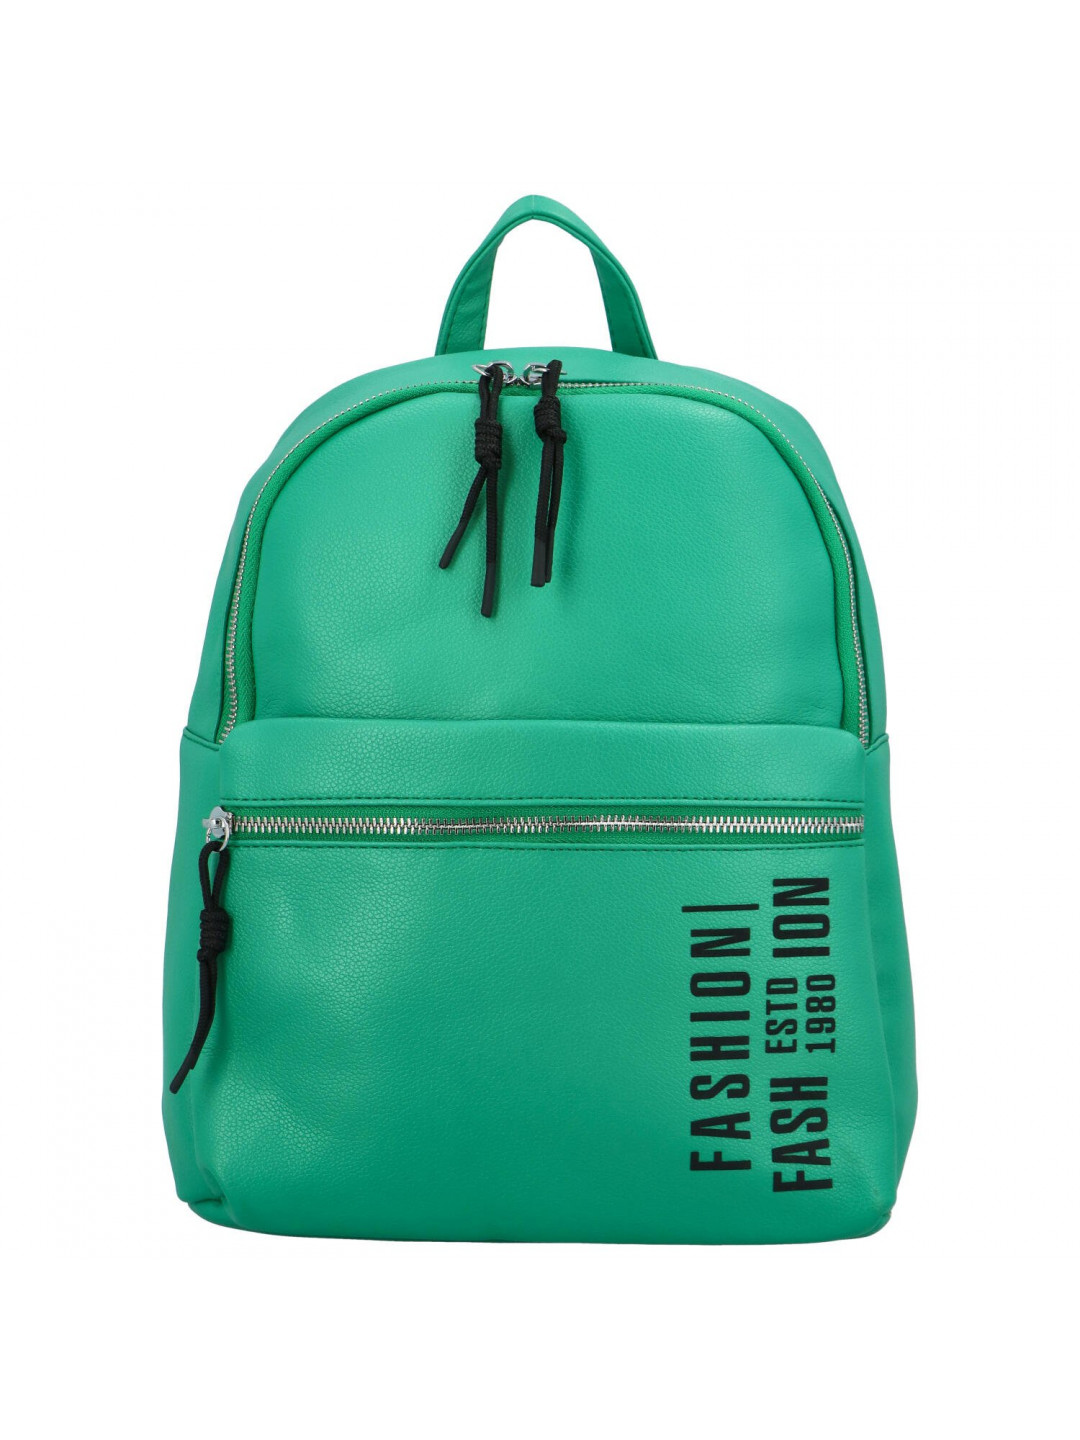 Trendový dámský koženkový batoh s potiskem Lia zelený